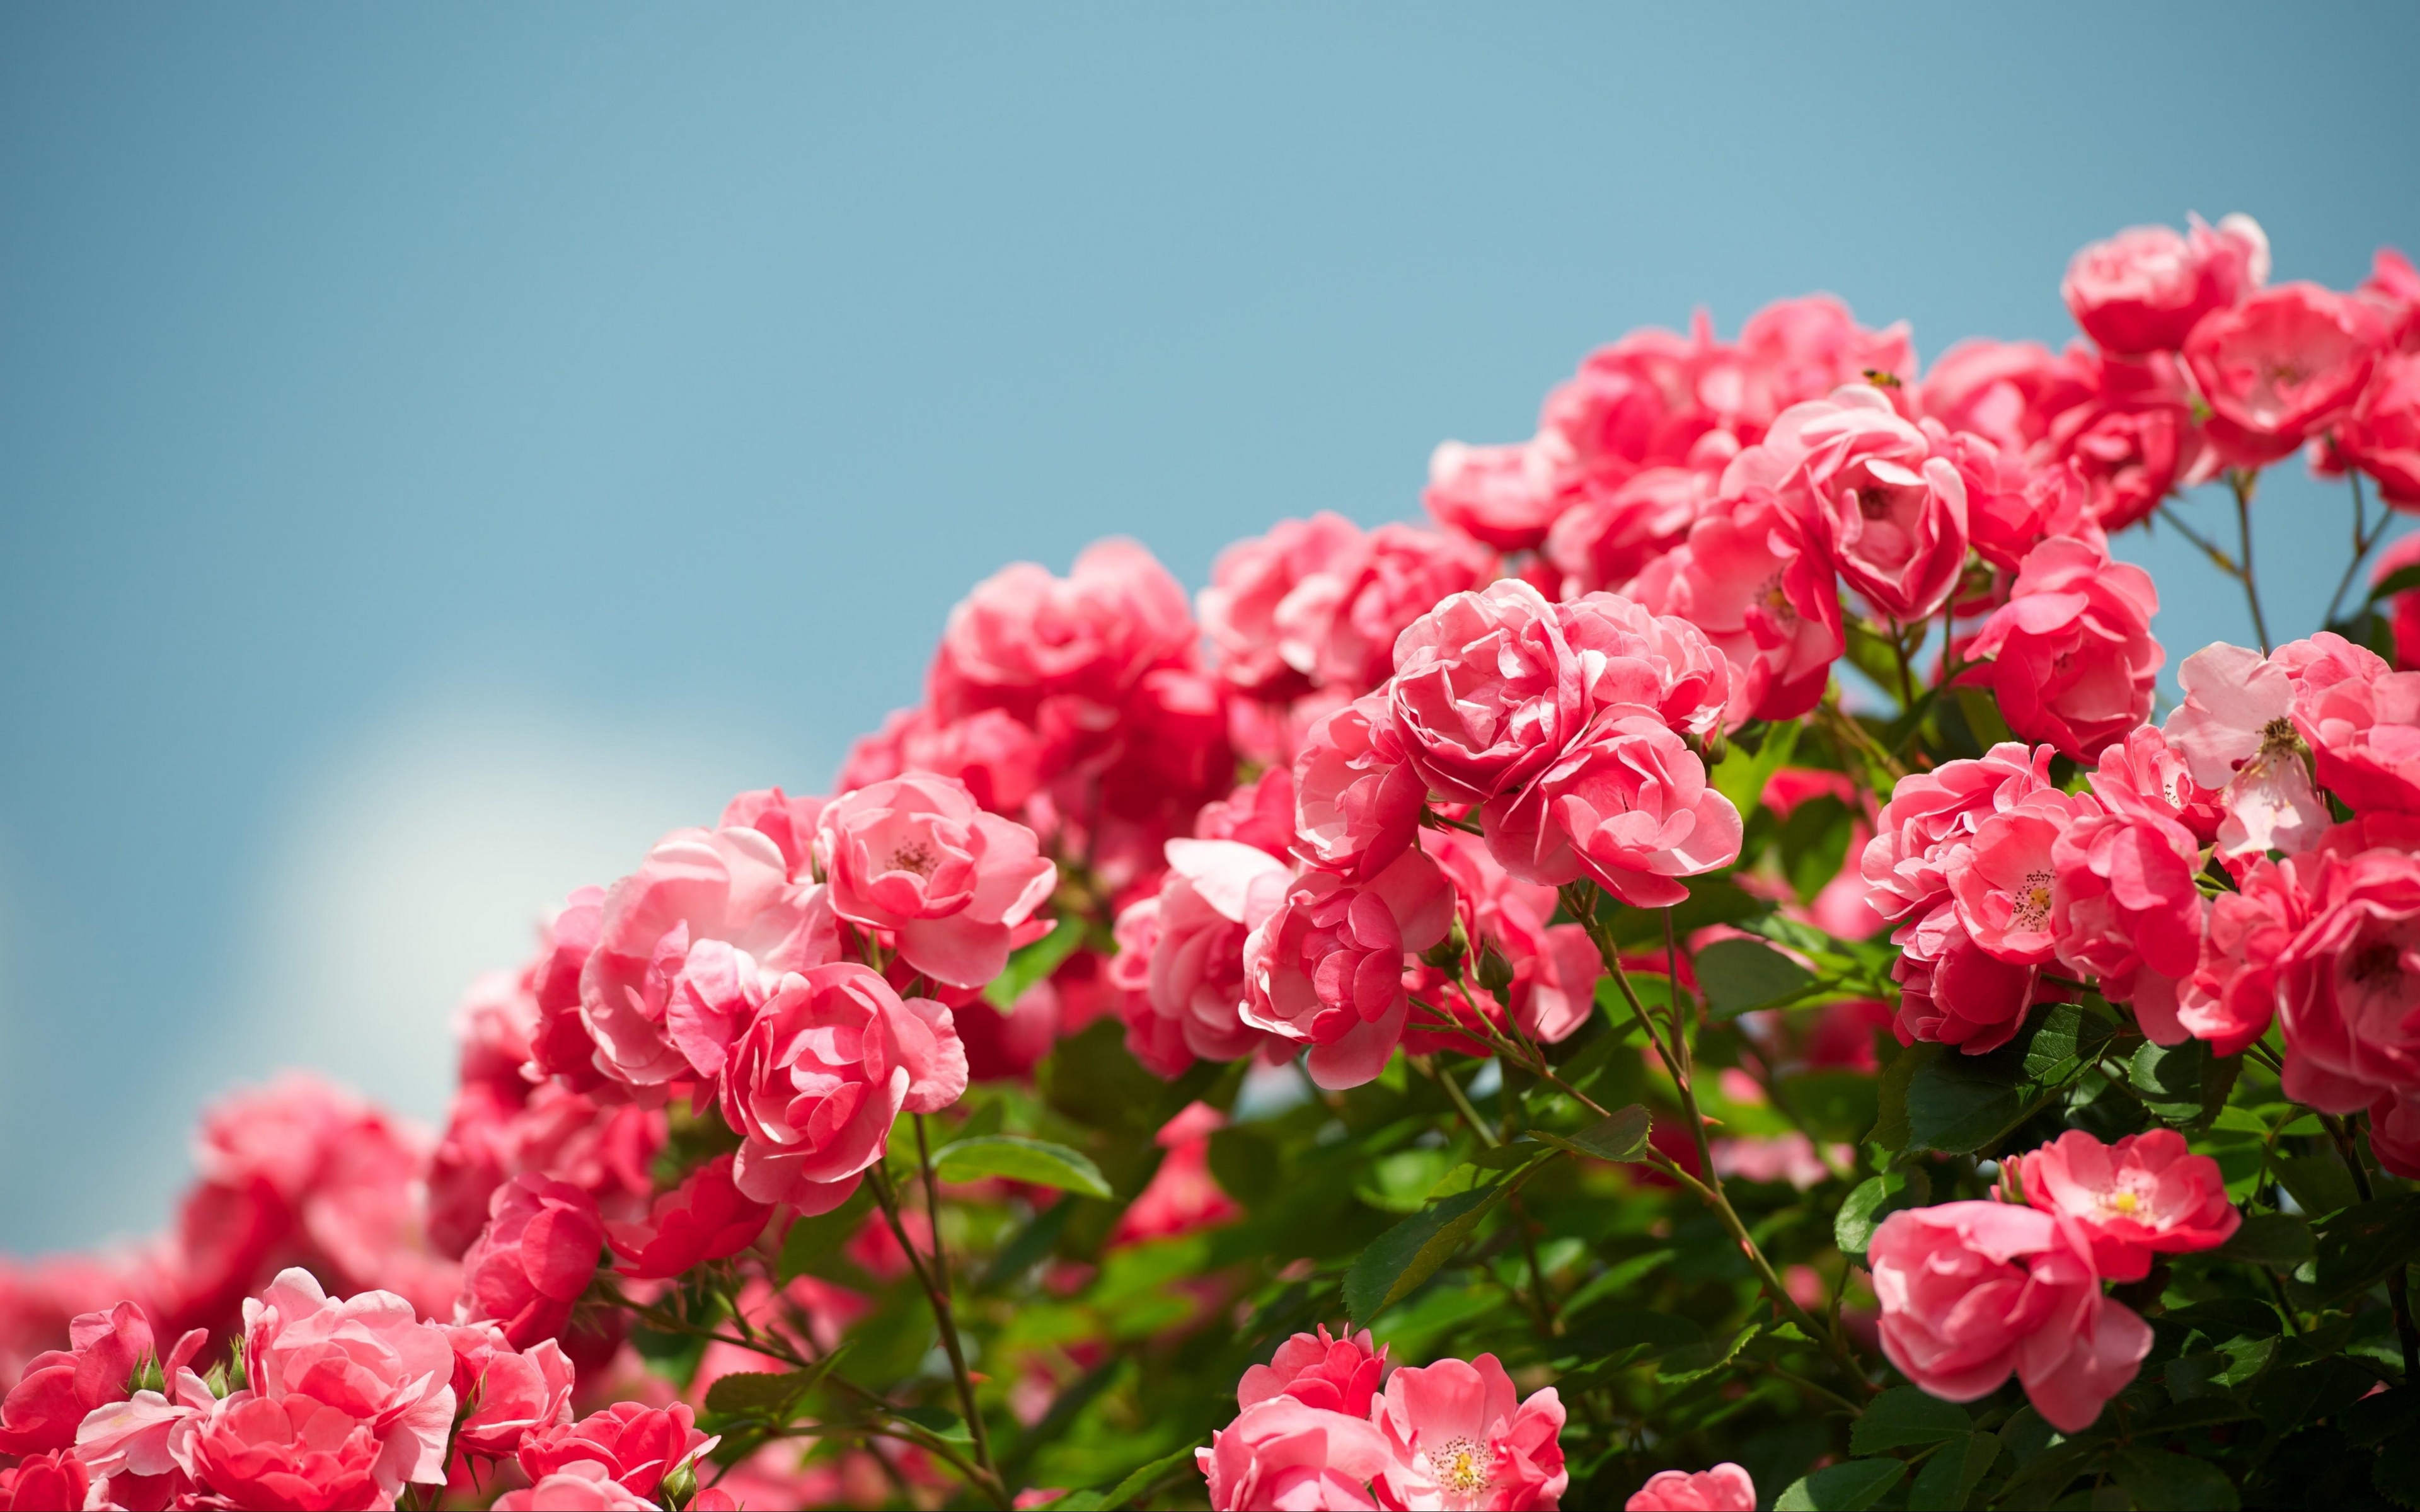 розы, кустарник, цветы, розовые розы, голубое небо, roses, shrub, flowers, pink roses, blue sky